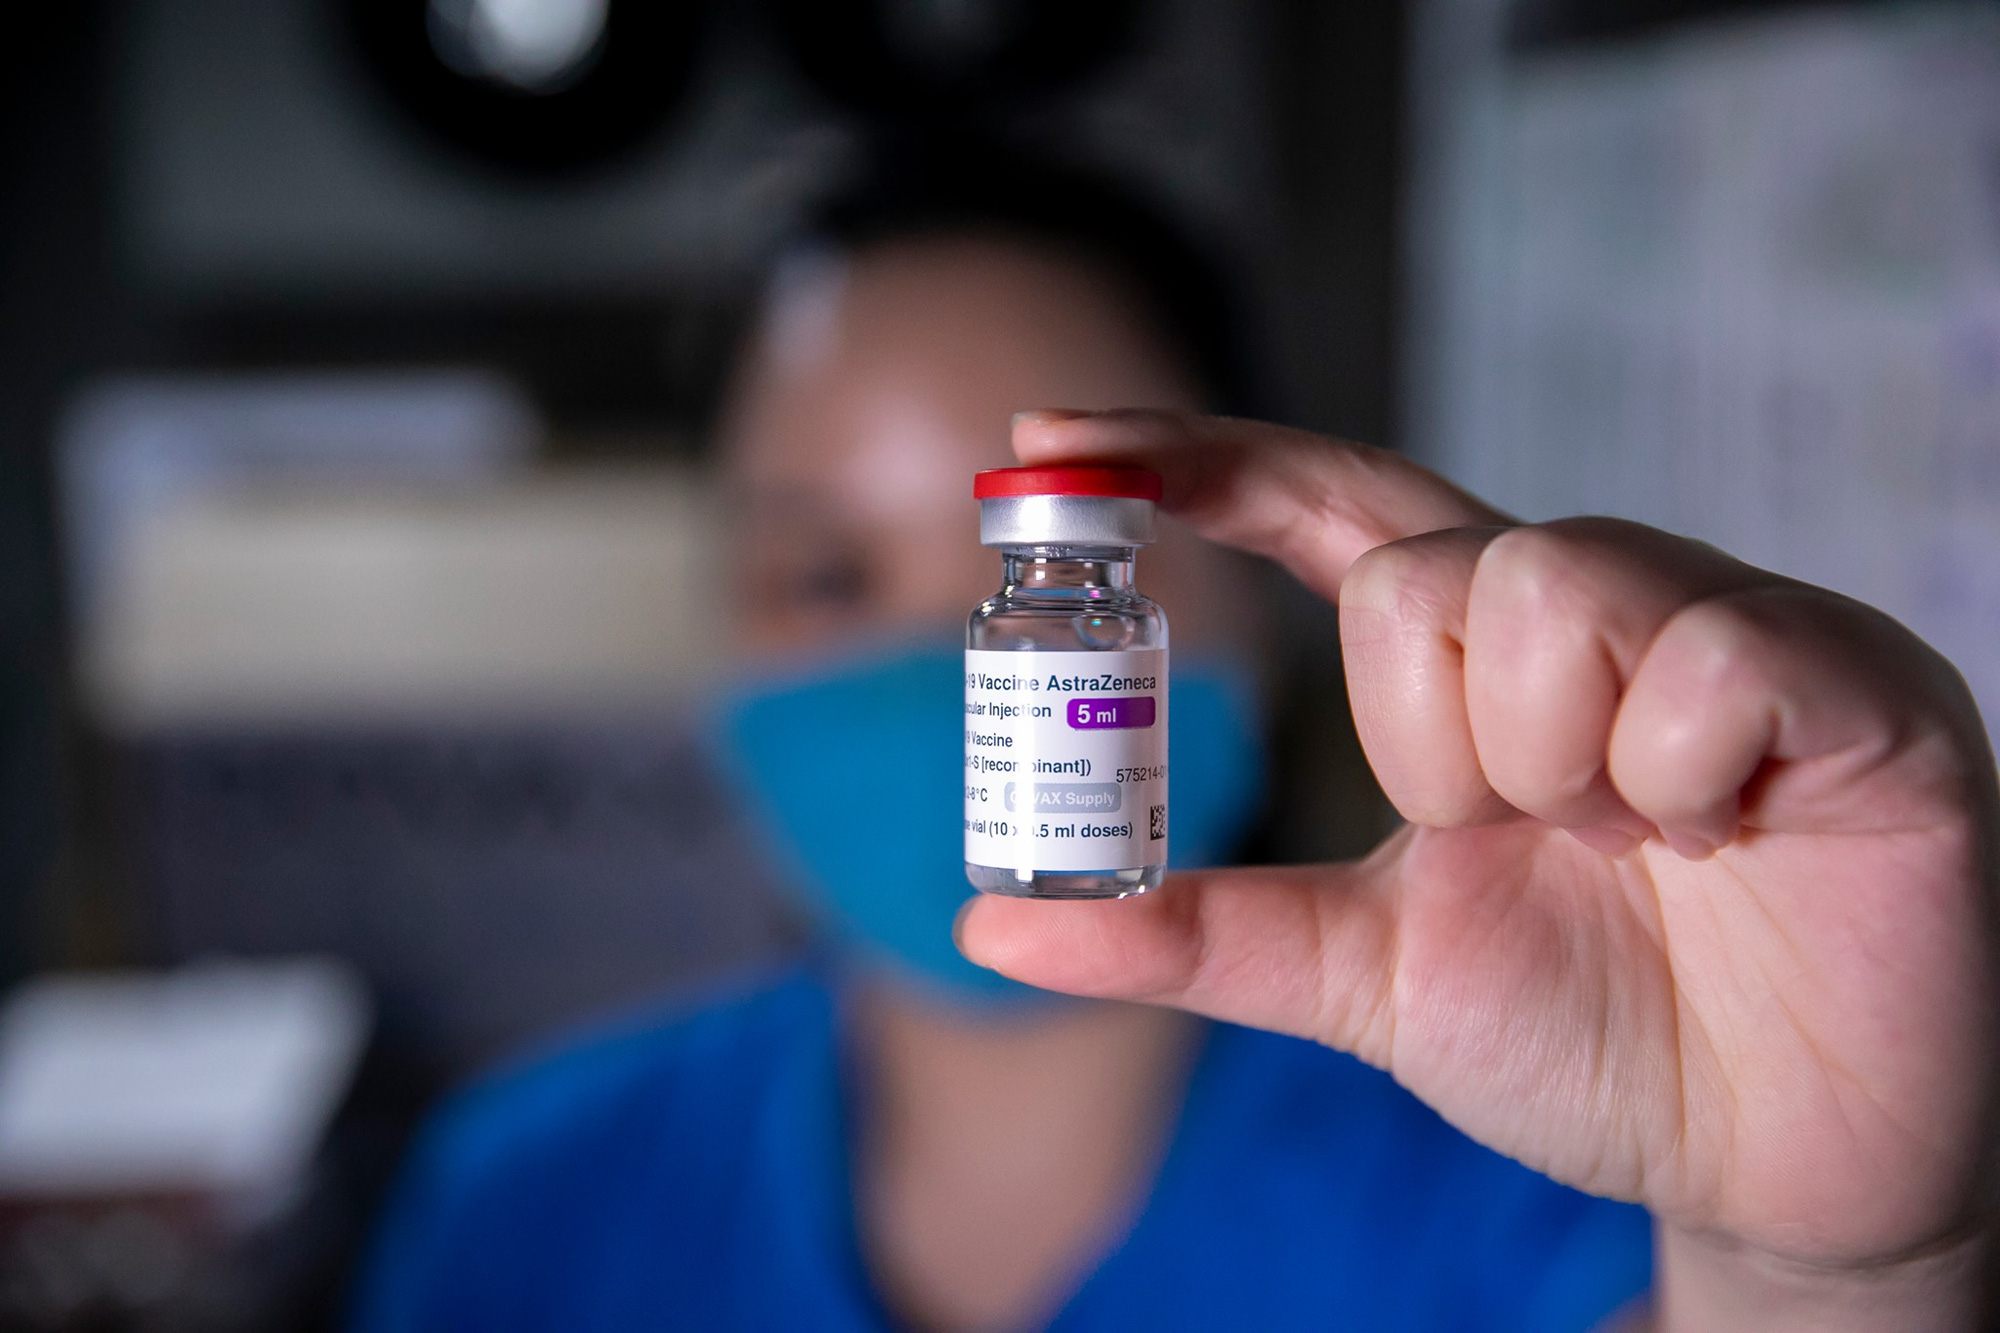 Thủ tướng giao Bộ Y tế kiểm tra chất lượng, cấp phép thêm 1 vắc xin Covid-19 - Ảnh 1.